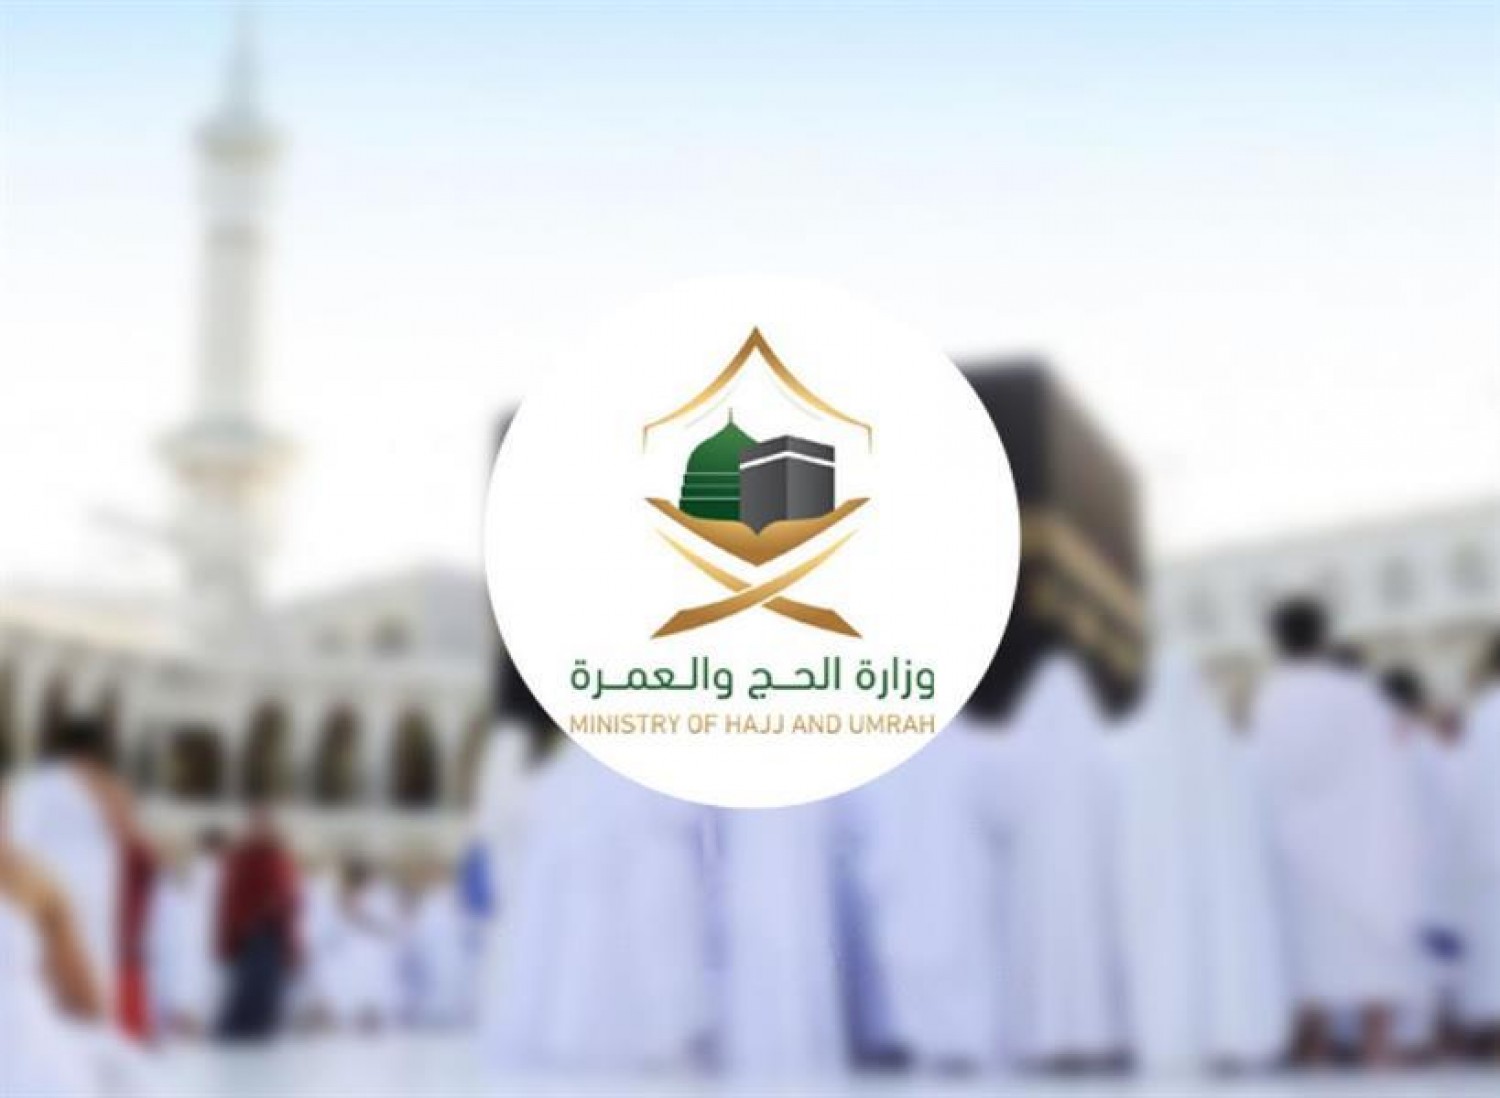 موعد التسجيل في الحج 1443 رابط وشروط حج 2022 haj.gov.sa وزارة الحج والعمرة